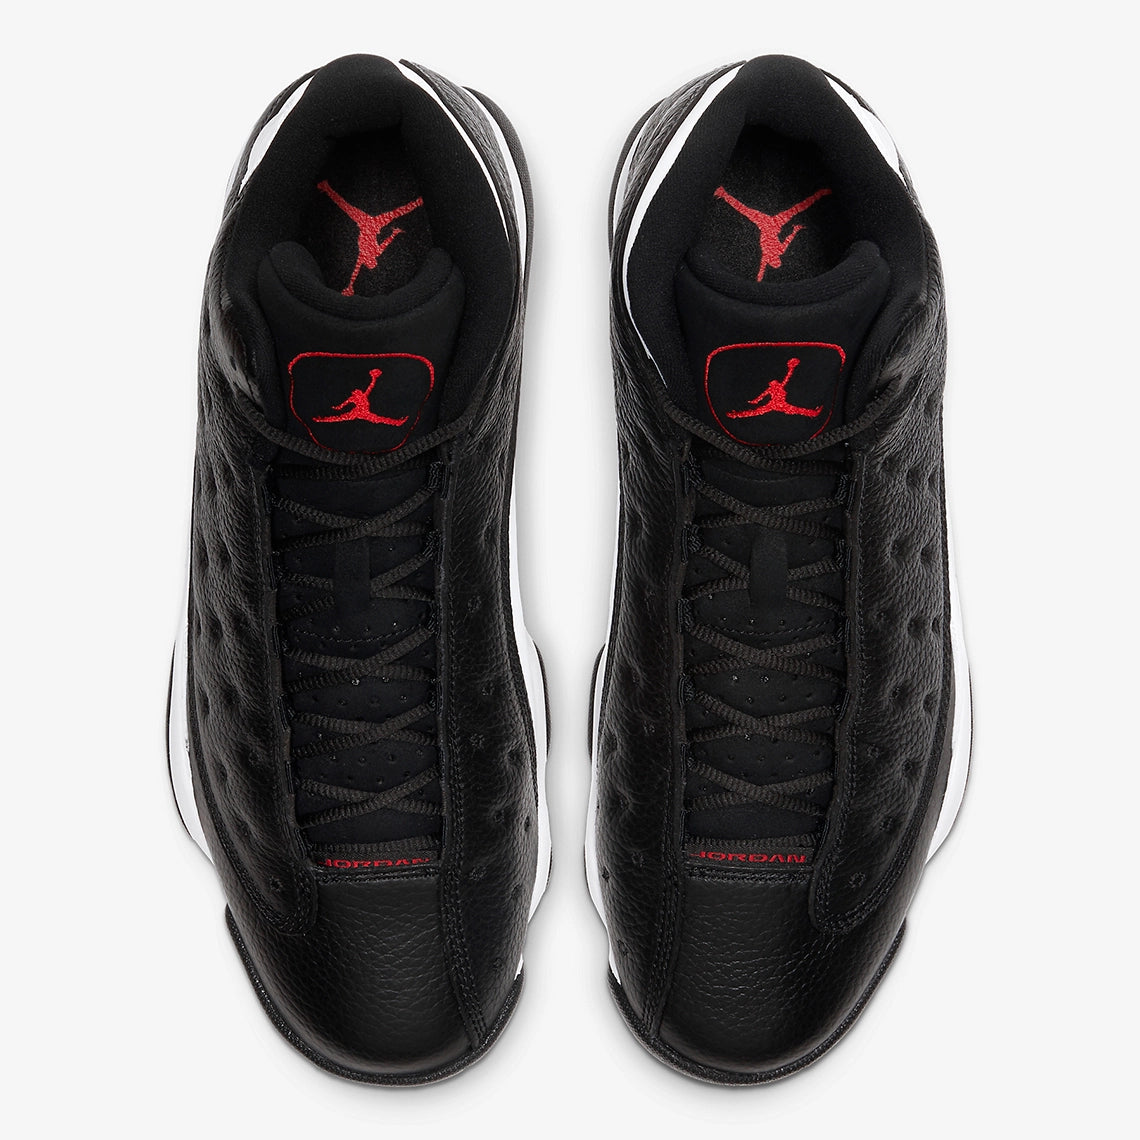 Air Jordan 13 Retro Reverse He Got Game Sneakers